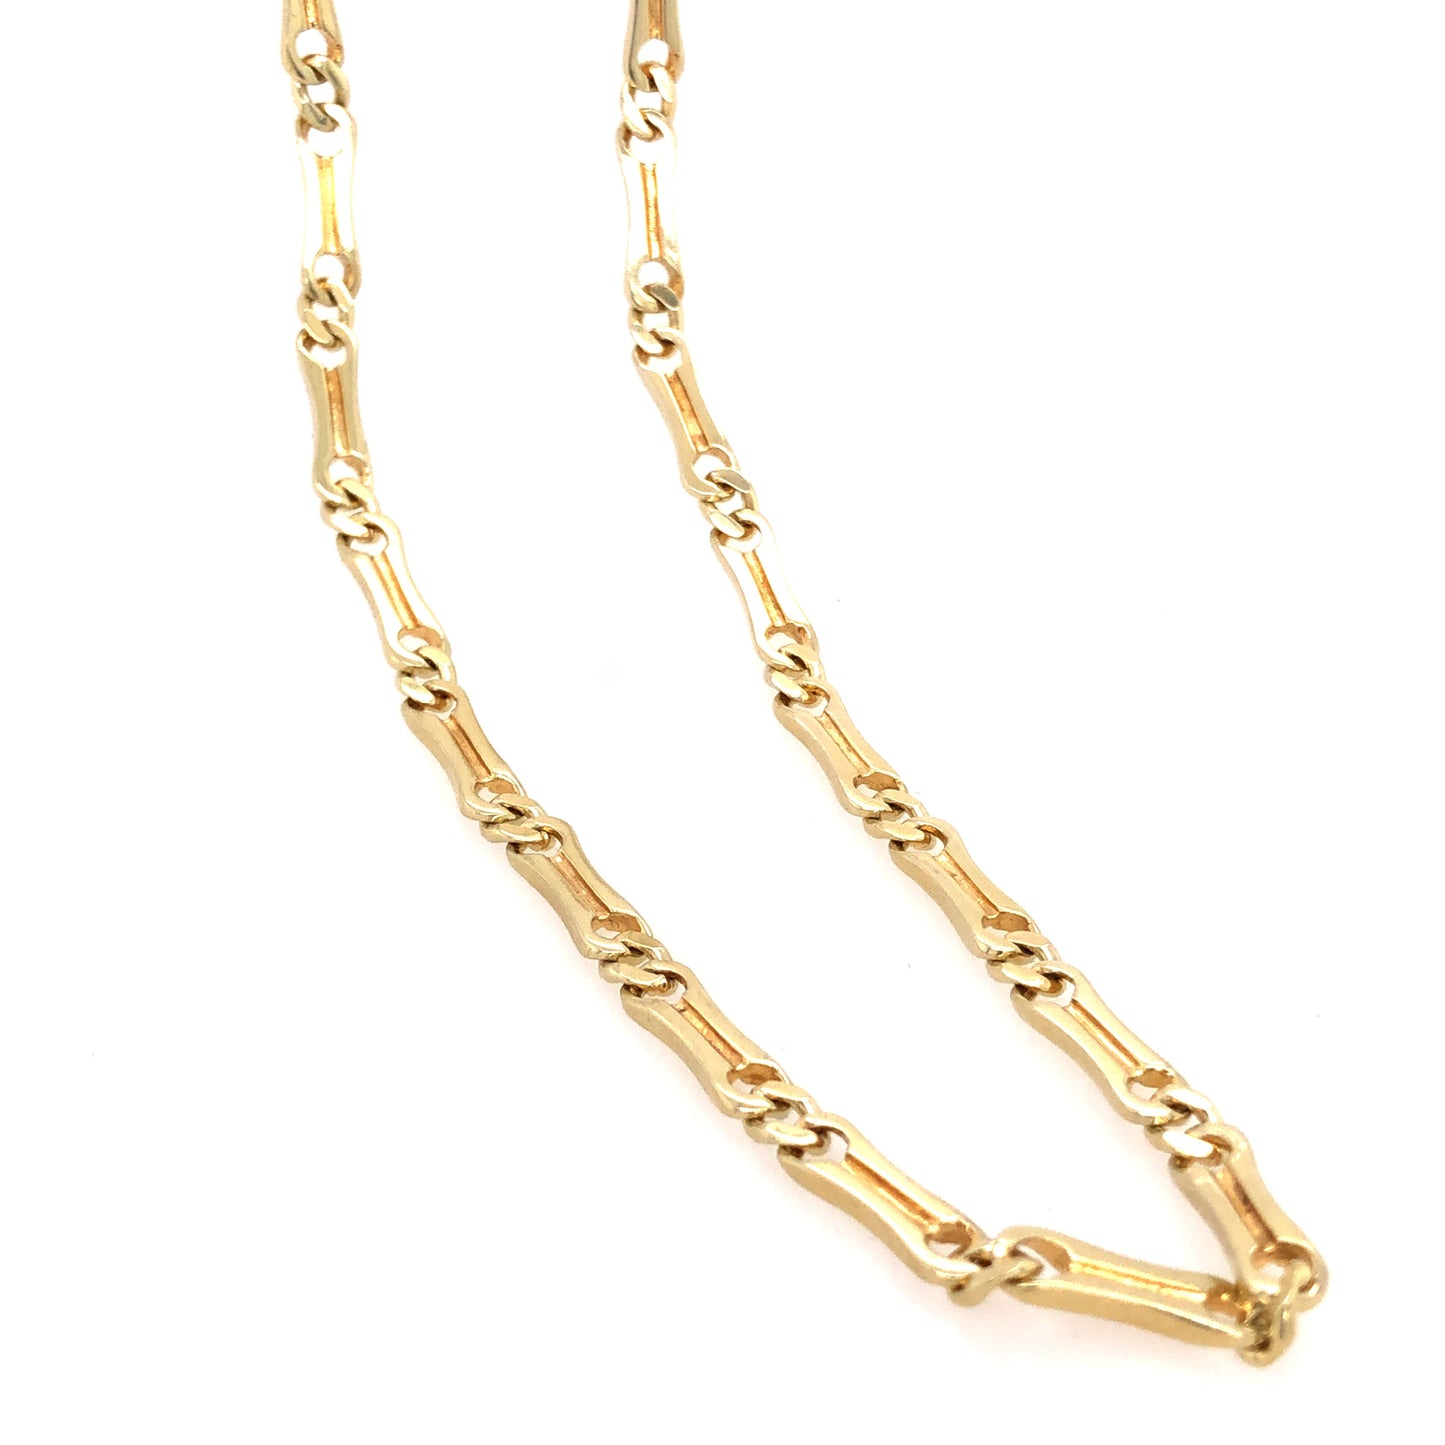 Halskette Gold 585 / 14k , Steigbügelkette